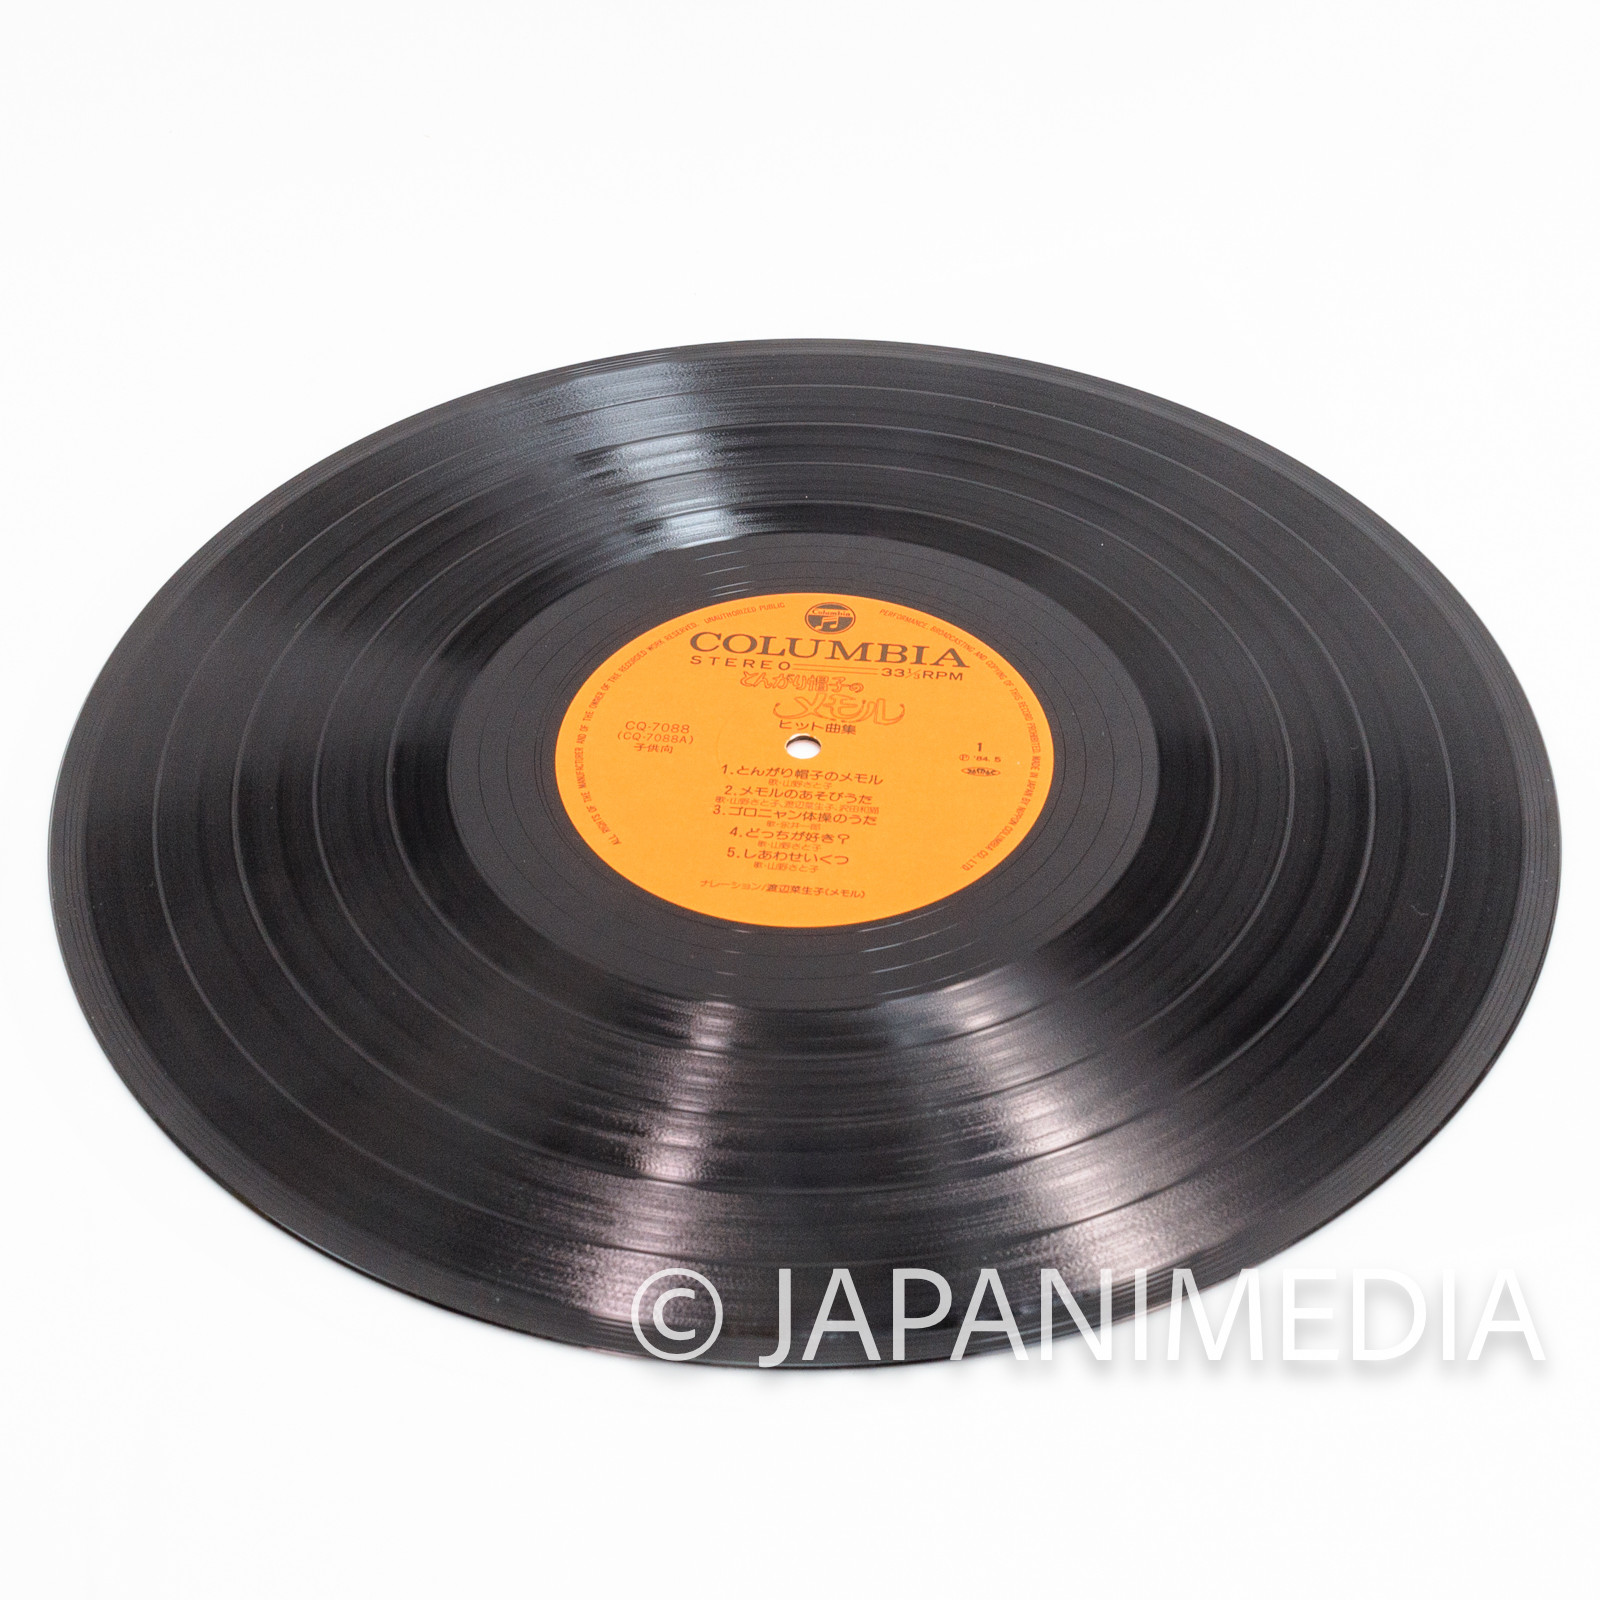 Memole Dolce Memole Song/ Music & Drama Dialogue Vinyl LP Record CQ-7088